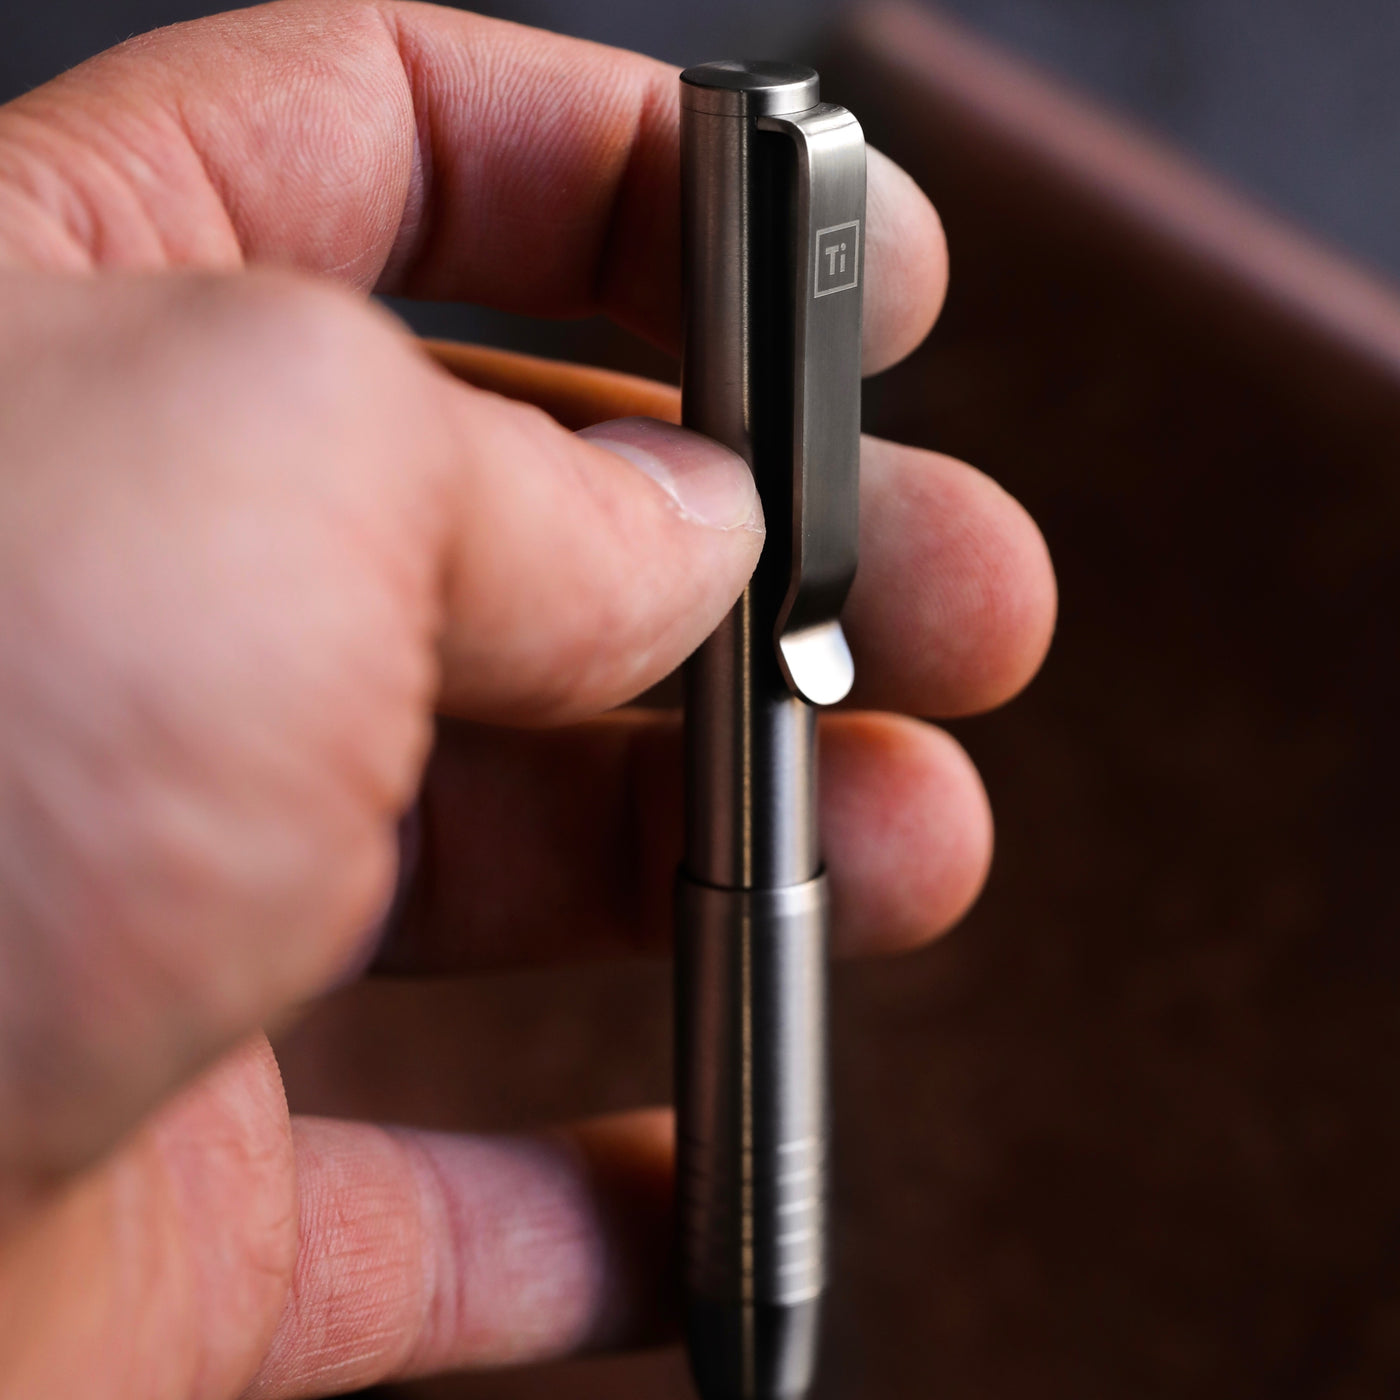 Big Idea Design Copper Pocket Pro Pen (Red Tone)